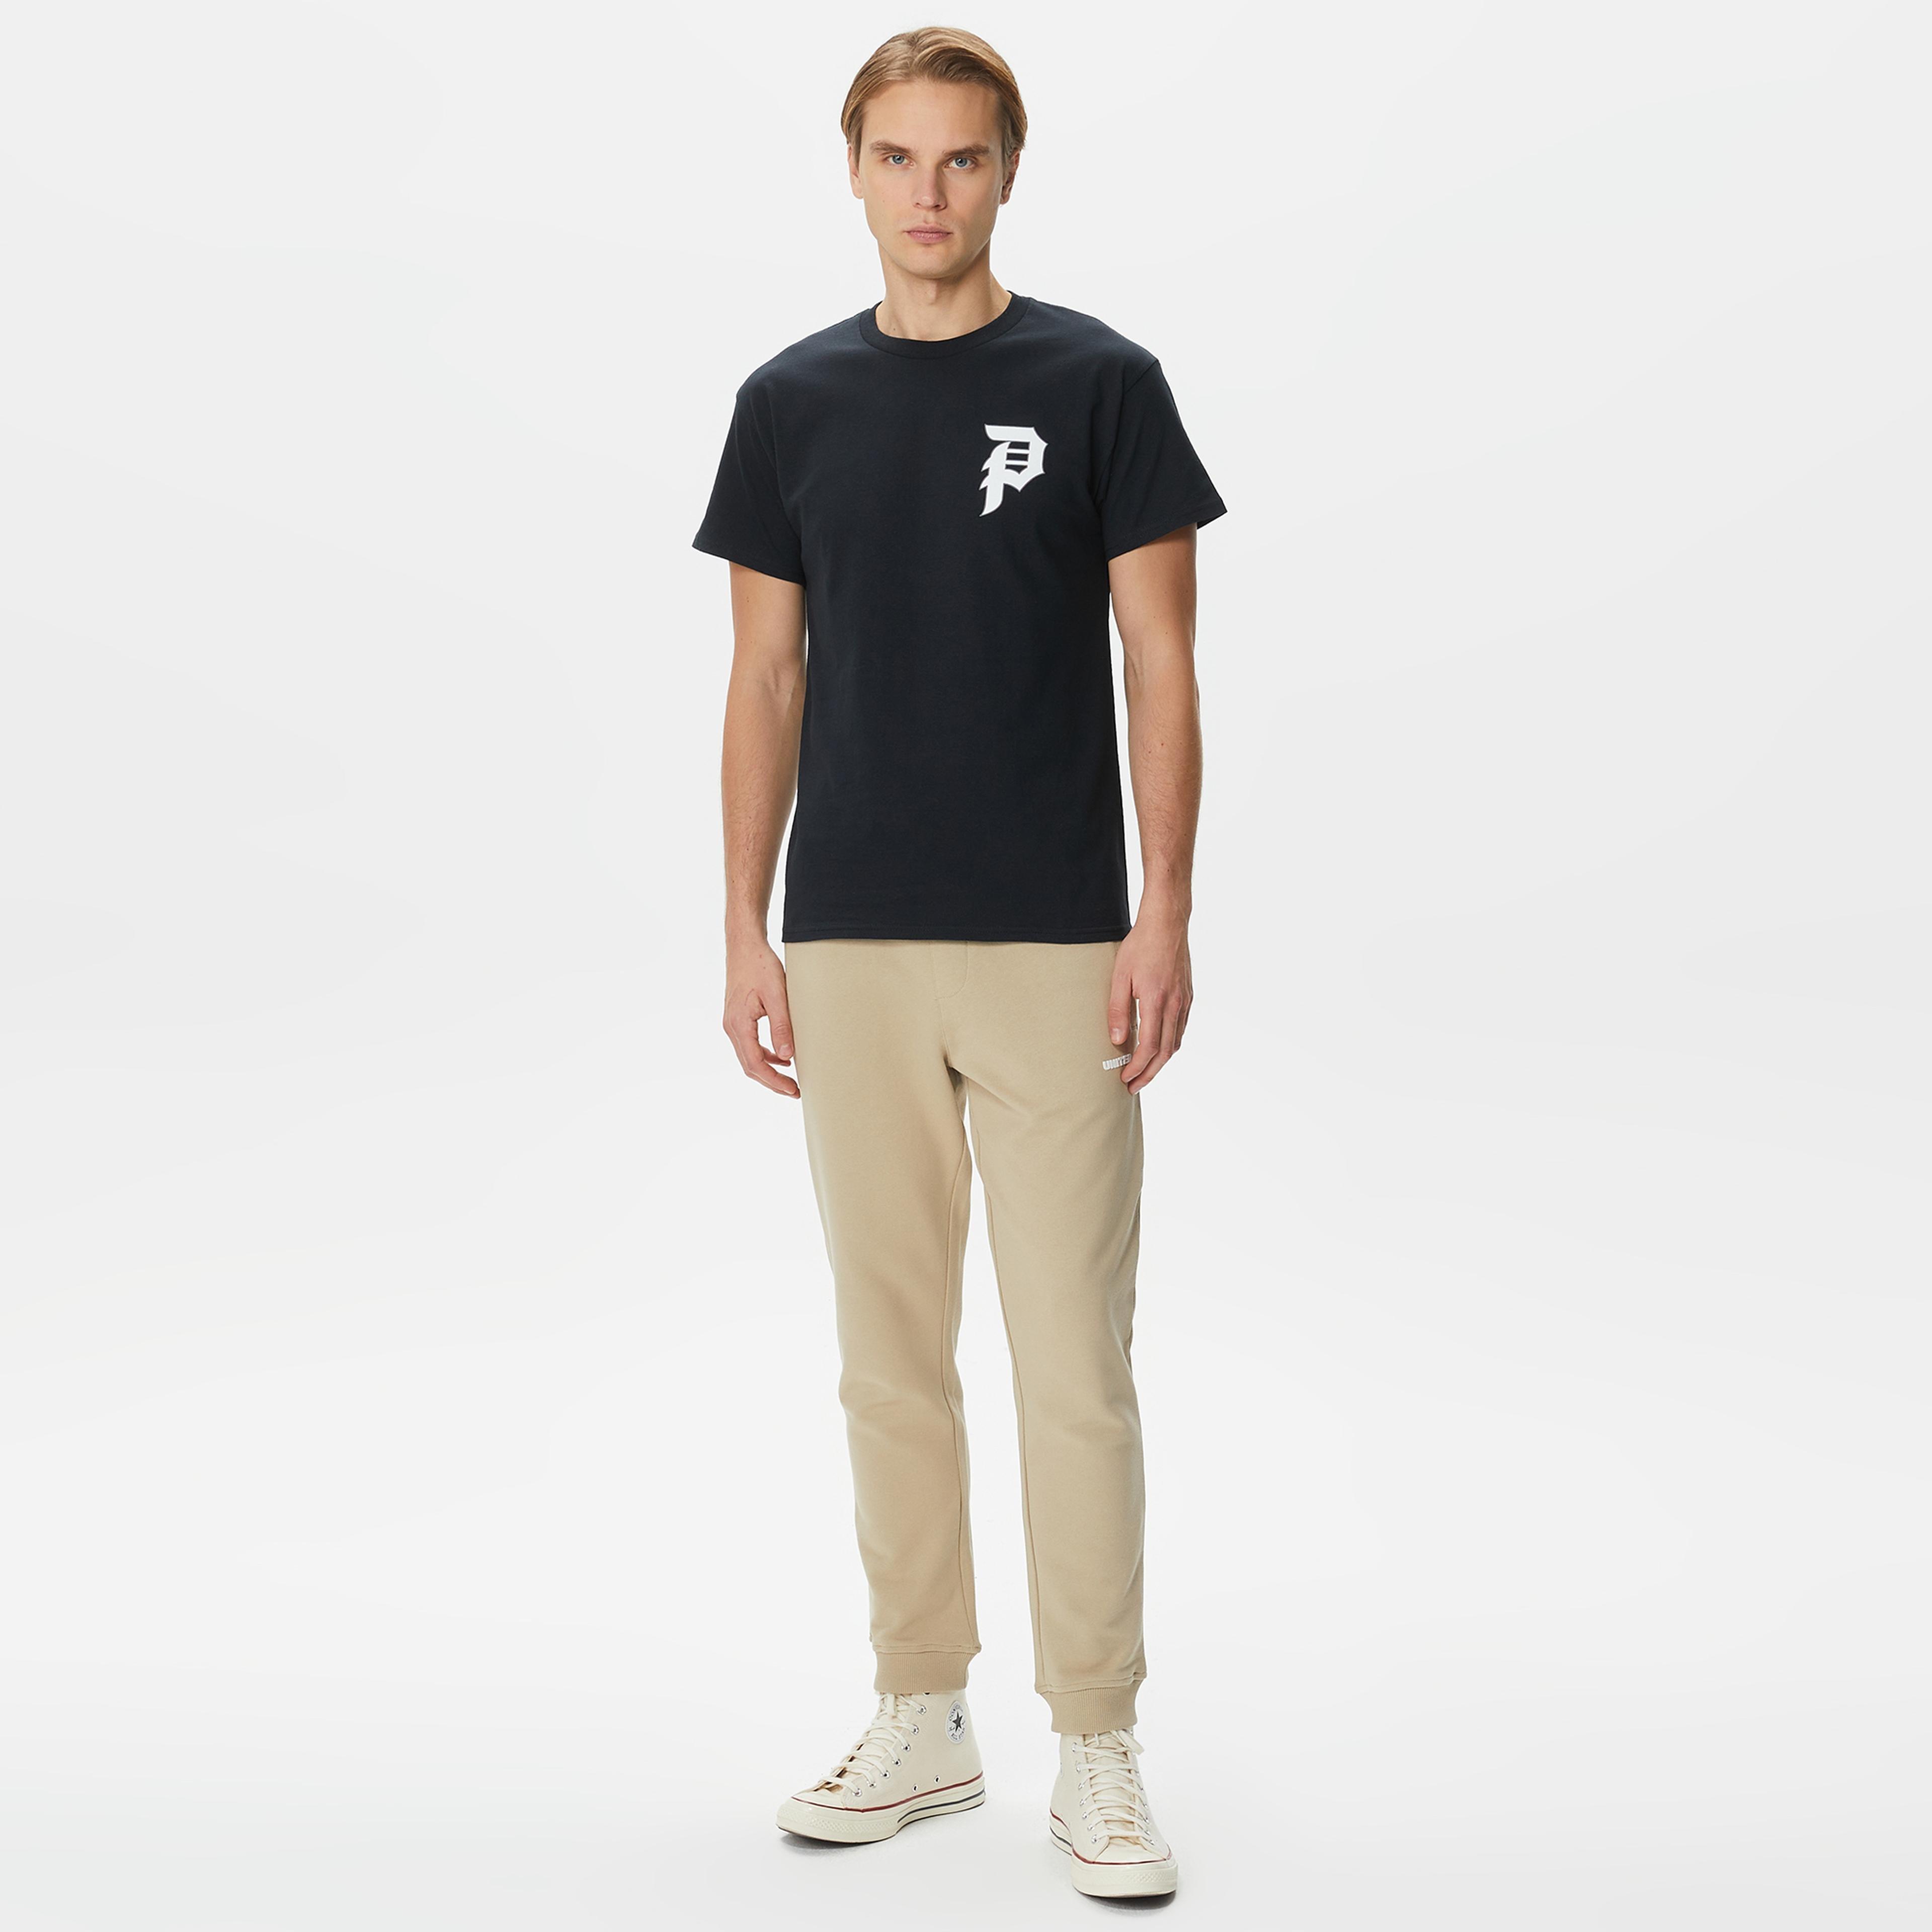 Primitive Tangle Erkek Siyah T-Shirt